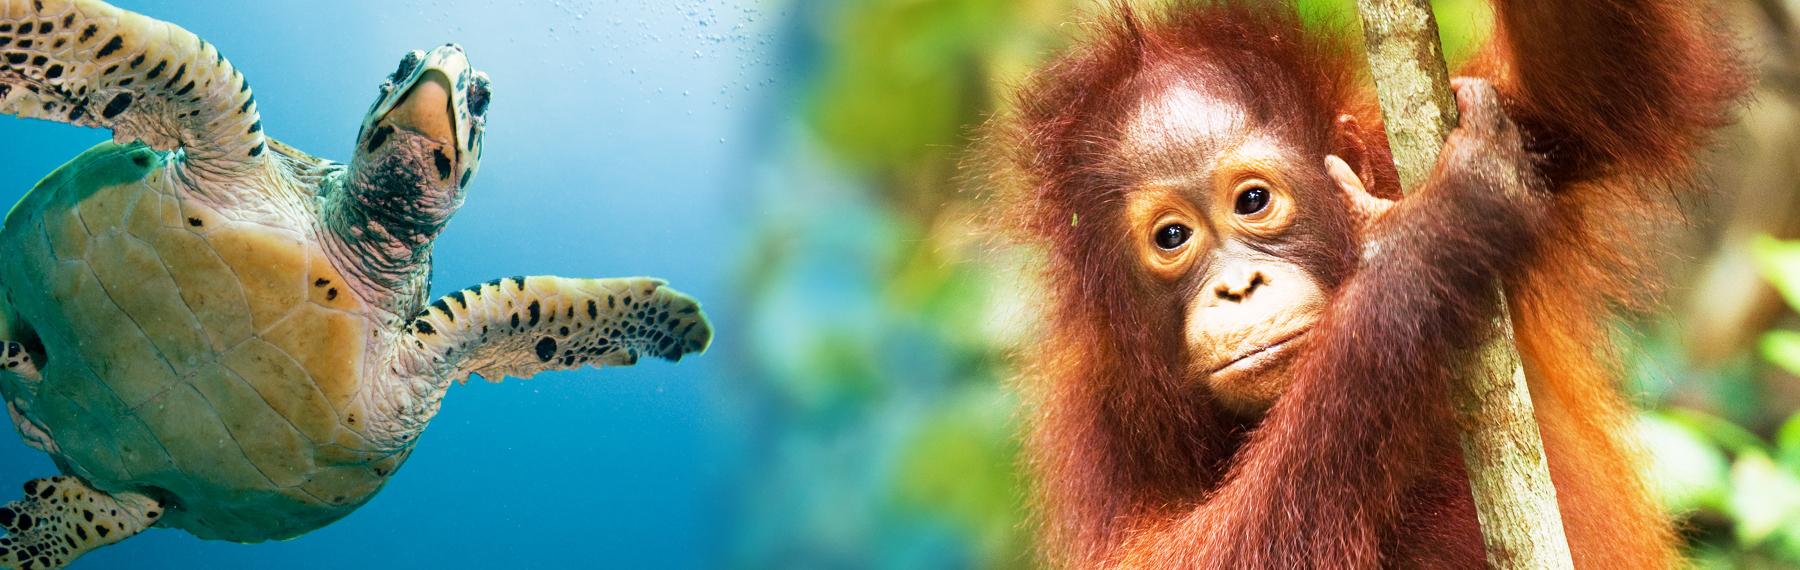 havssköldpadda och orangutang